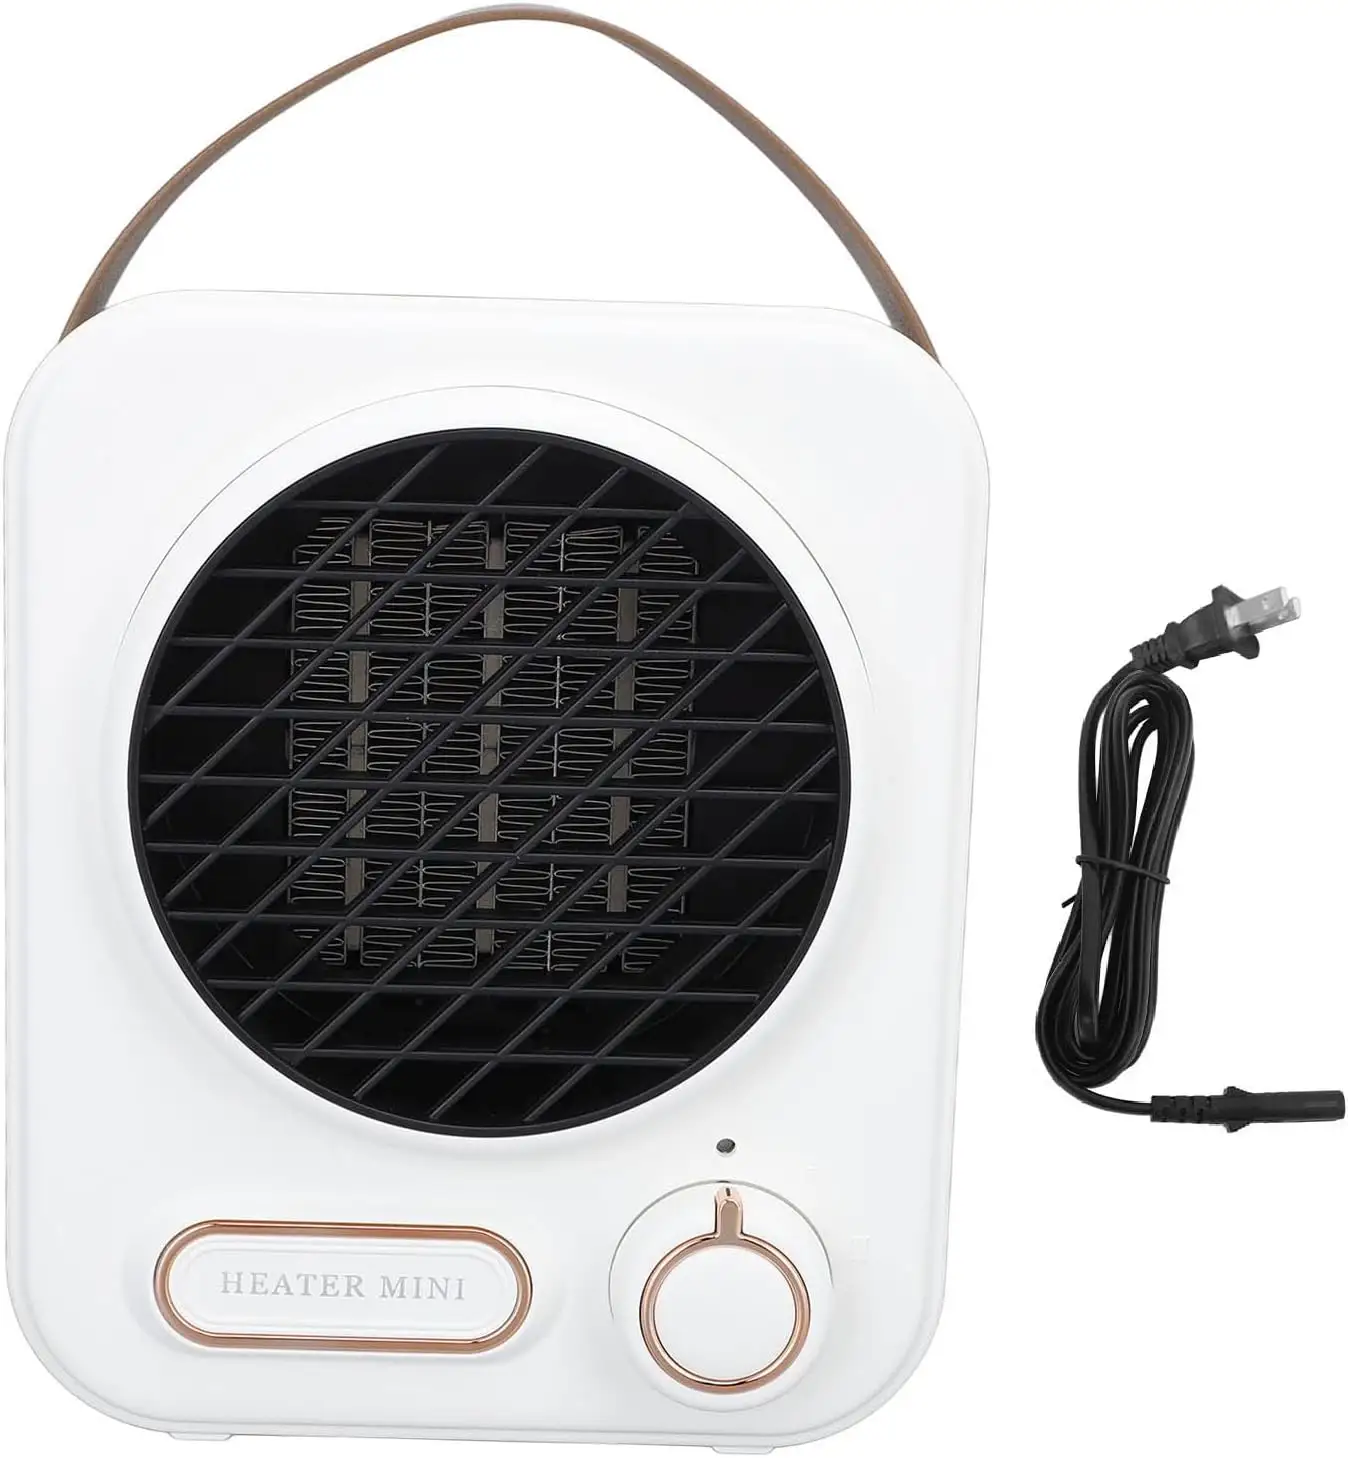 Mini ventilateur de chauffage en céramique Ptc de chauffage rechargeable Portable 500w avec protection contre les hautes températures pour les radiateurs électriques ménagers